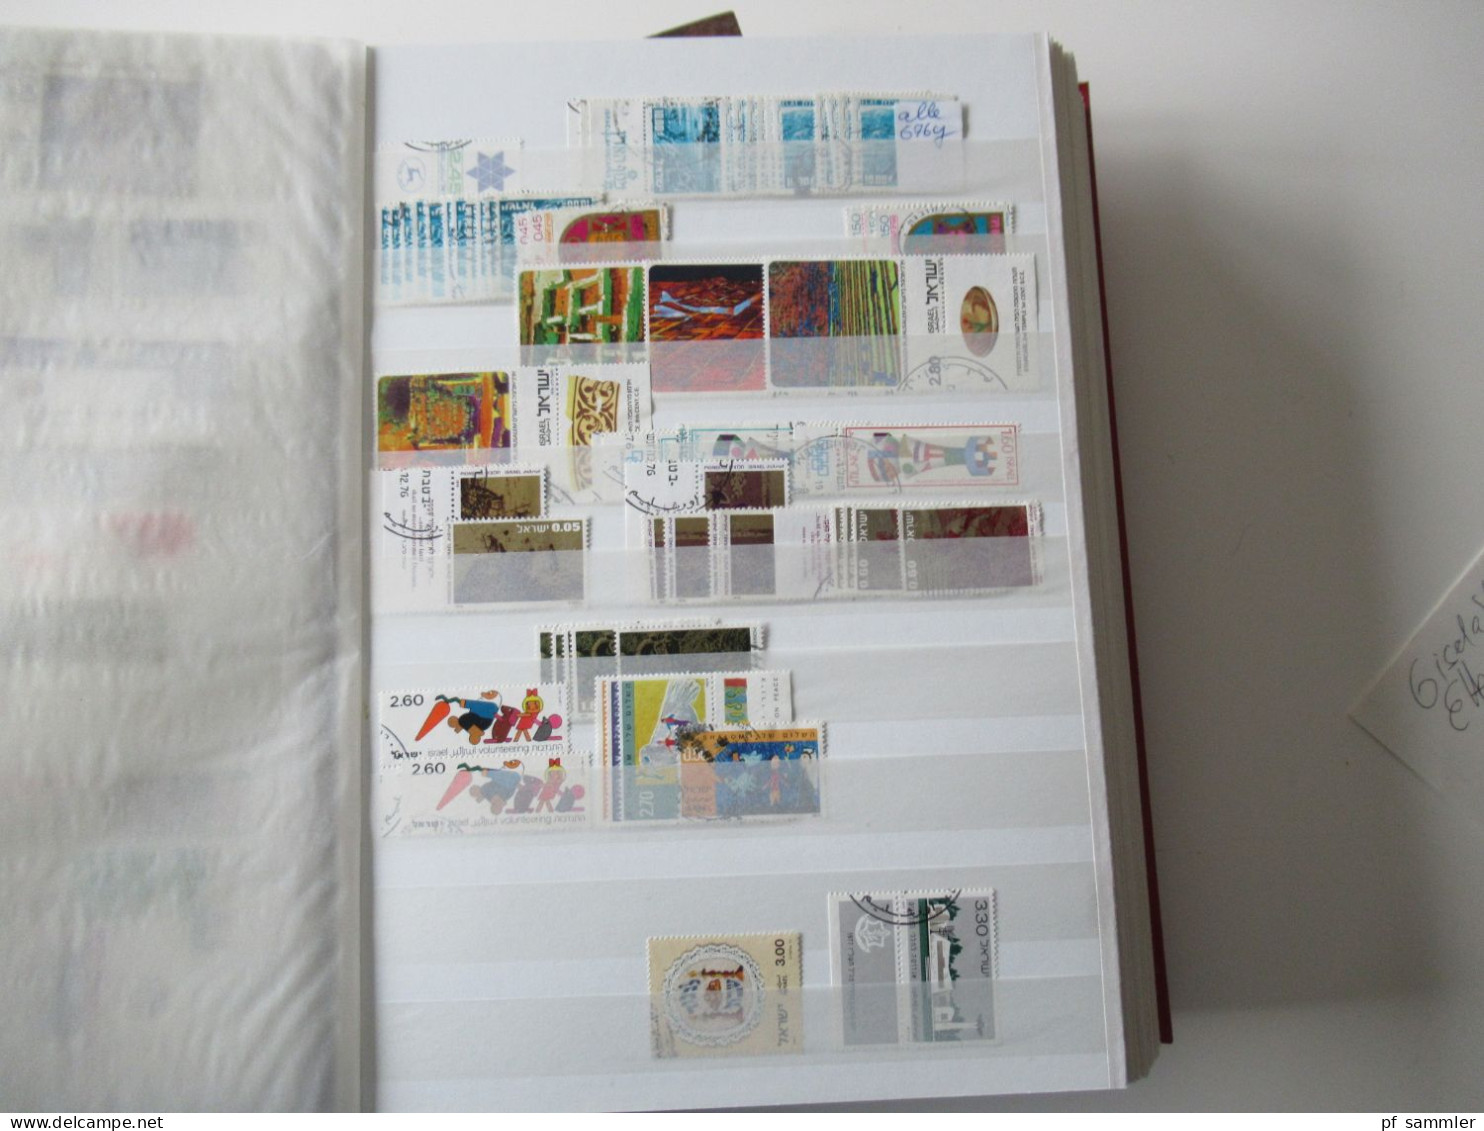 Sammlung / 2x dickes Lagerbuch Asien Israel ab Palestine - ca. 2013 tausende gestempelte Marken / absolute Fundgrube!!